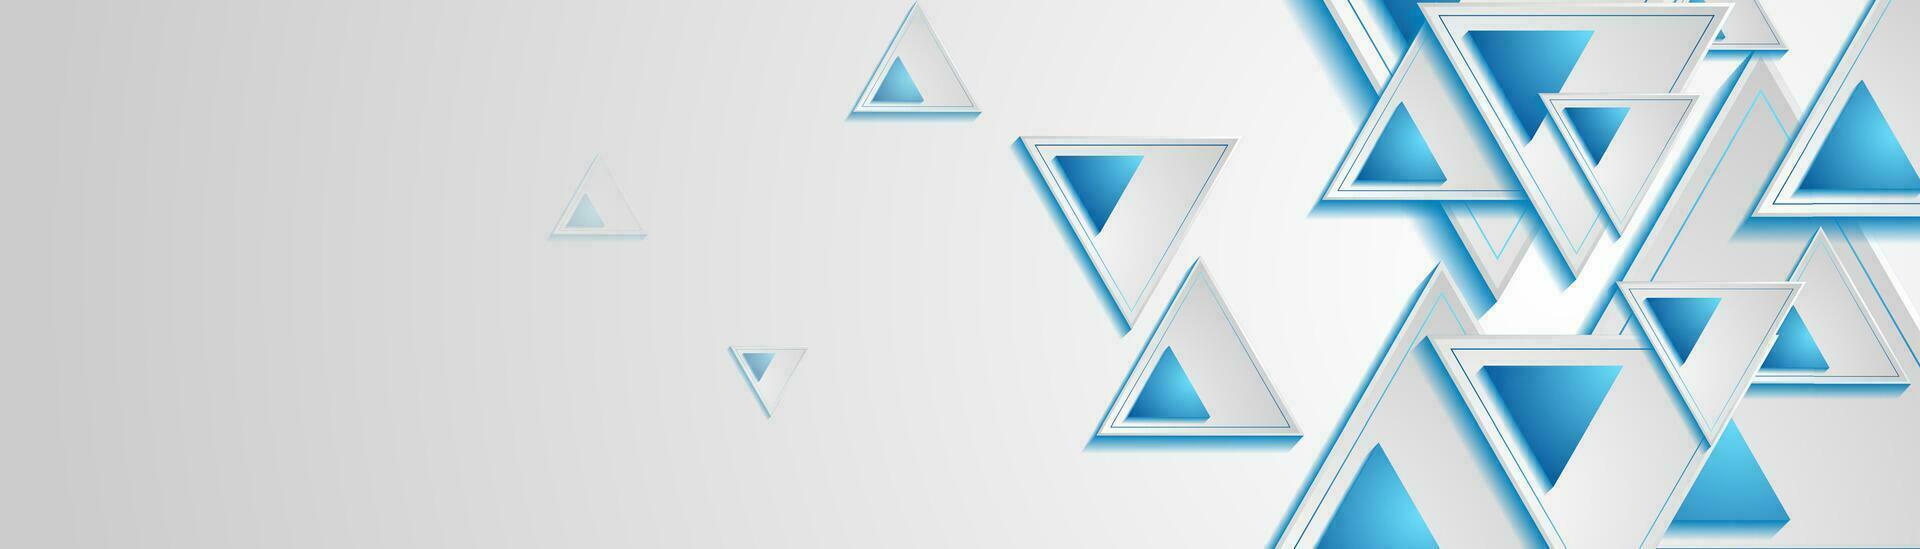 grijs en blauw driehoeken abstract meetkundig tech banier vector